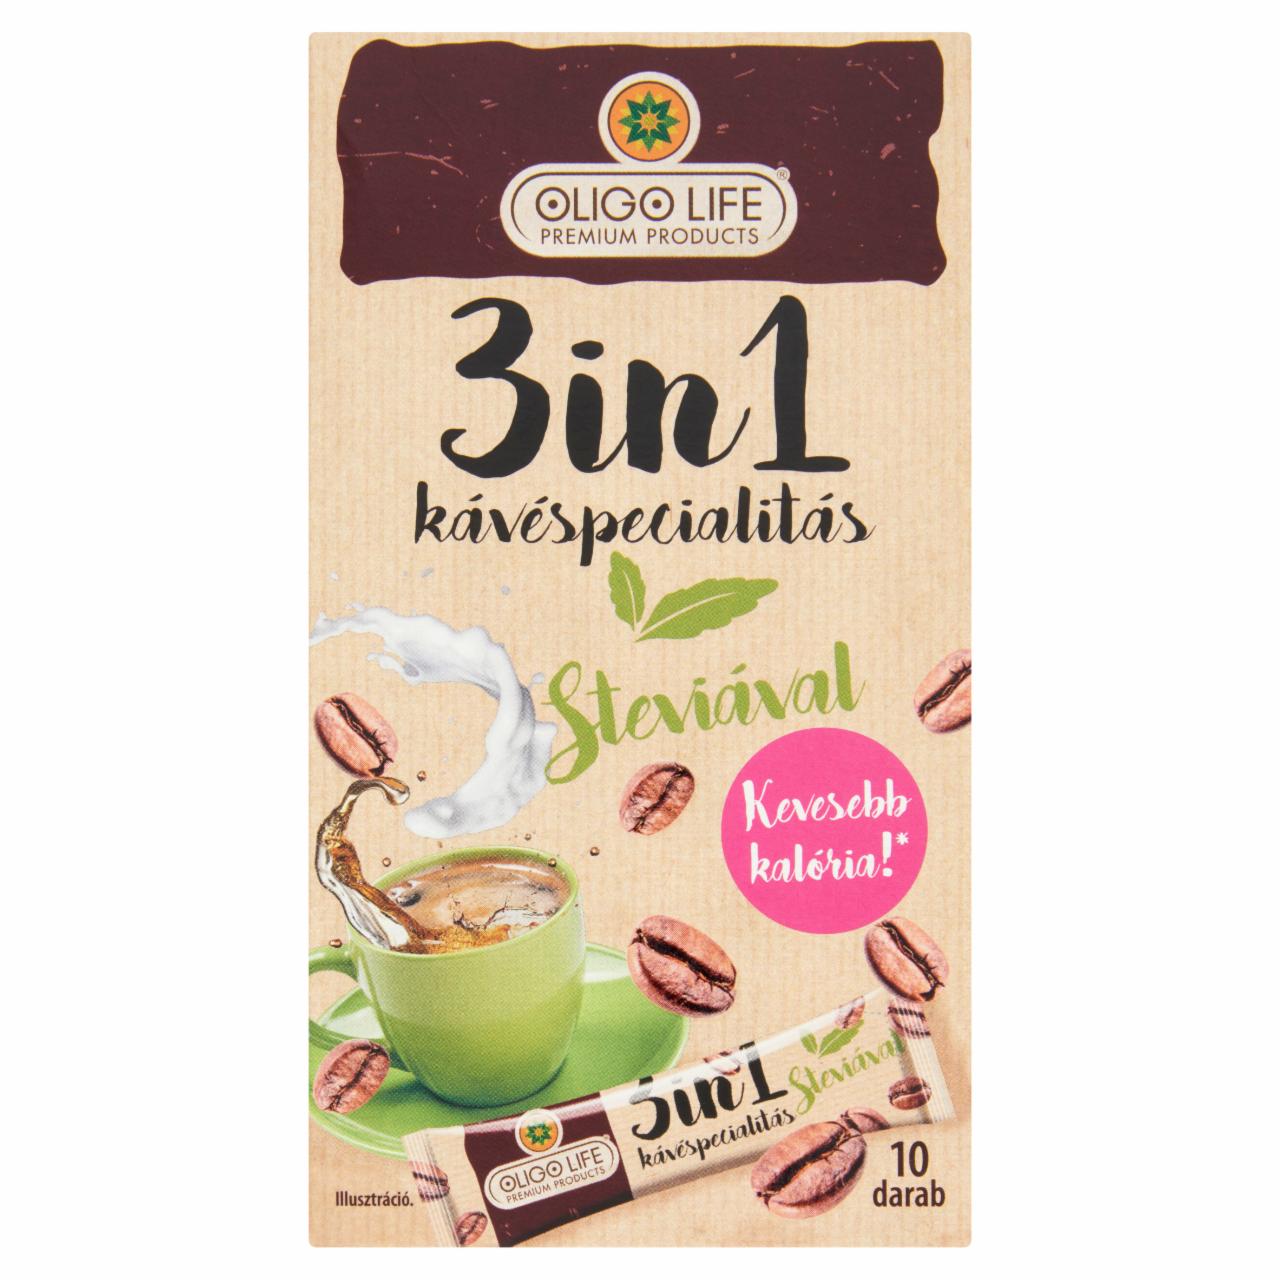 Képek - Oligo Life 3in1 azonnal oldódó kávéspecialitás cukorral és steviával 10 x 10 g (100 g)